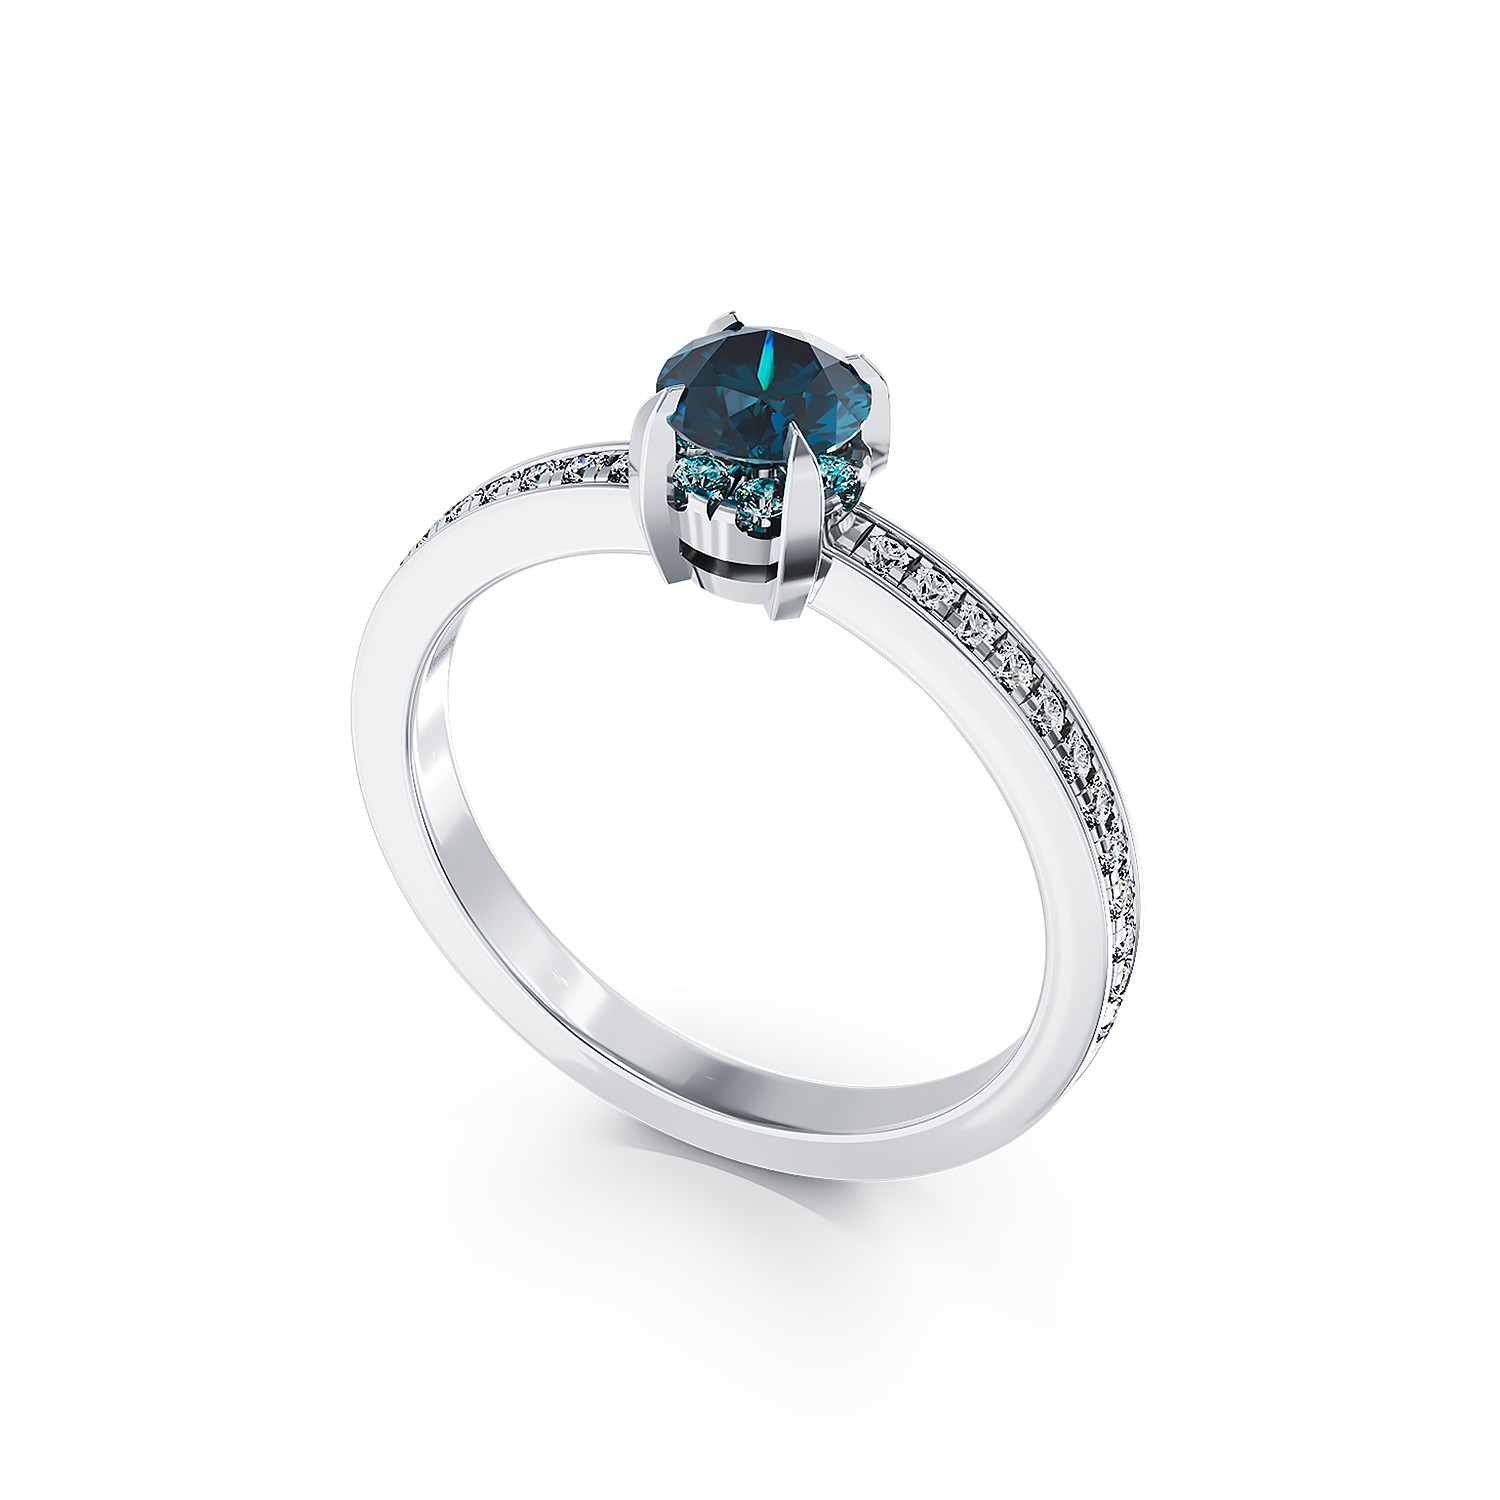 18 karátos fehérarany eljegyzési gyűrű 0.41 karátos kék gyémánttal és 0.2 karátos tiszta gyémántokkal